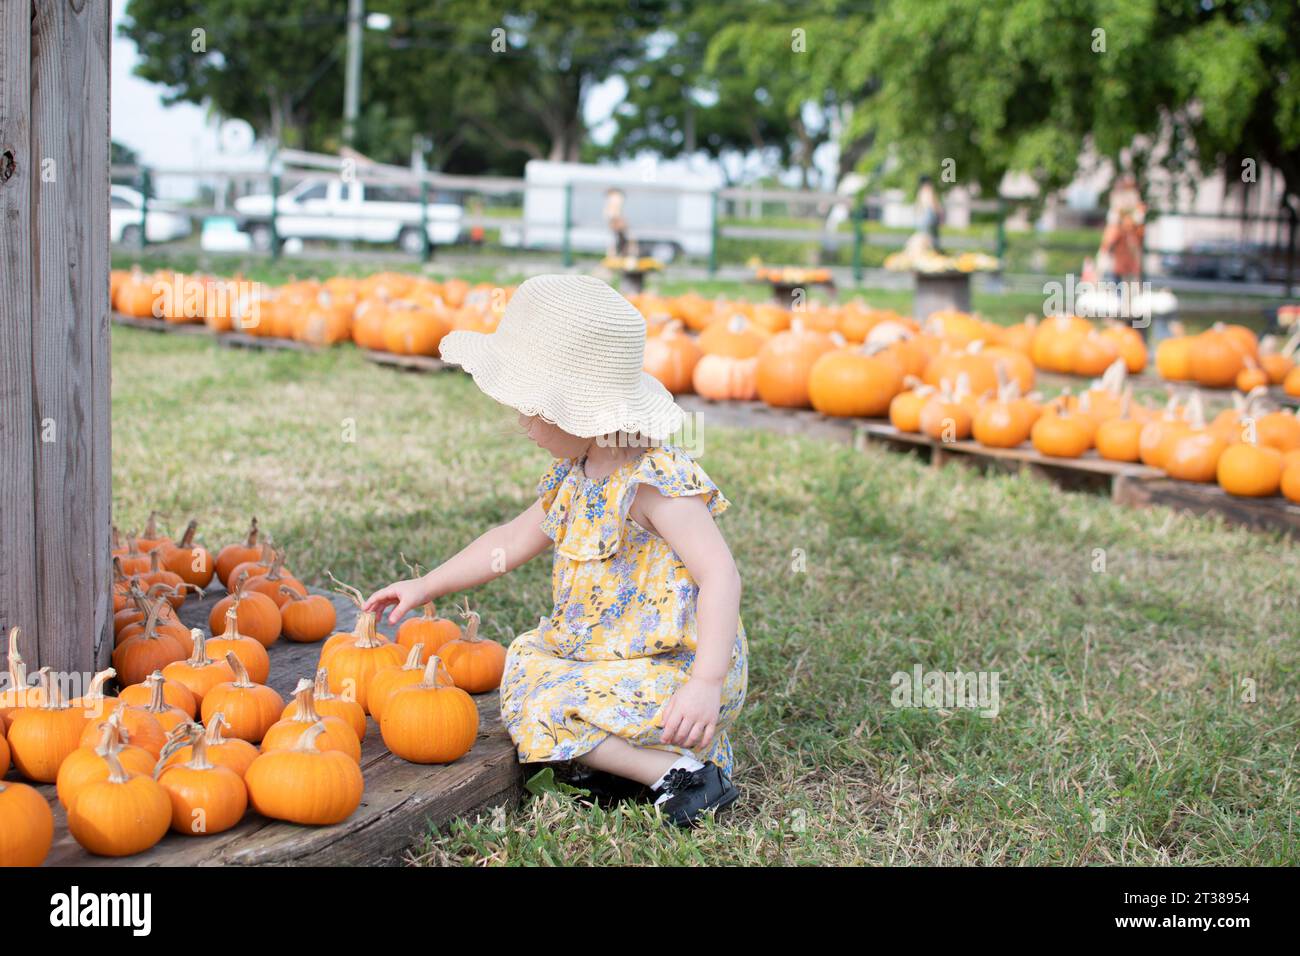 Une petite fille en bas âge dans un chapeau de paille choisit des citrouilles au patch de citrouille sur une ferme. Traditions familiales d'automne Banque D'Images